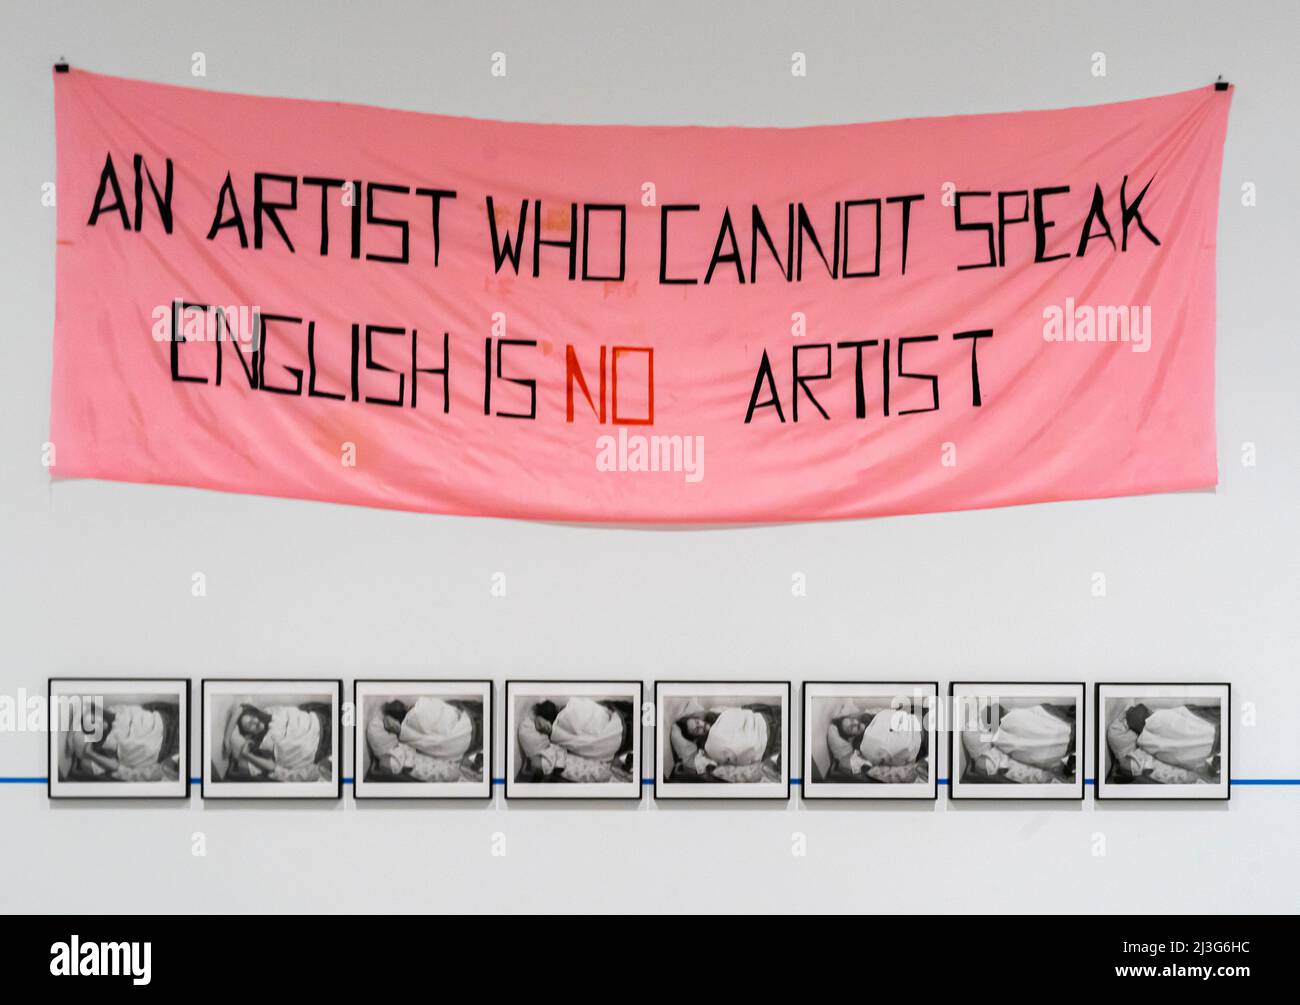 Un artista che non può parlare inglese non è artista - Mladen Stilinovic - 1992 - acrilico su seta artificiale - 140 x 420 cm. Reina Sofía Madrid Spagna Foto Stock